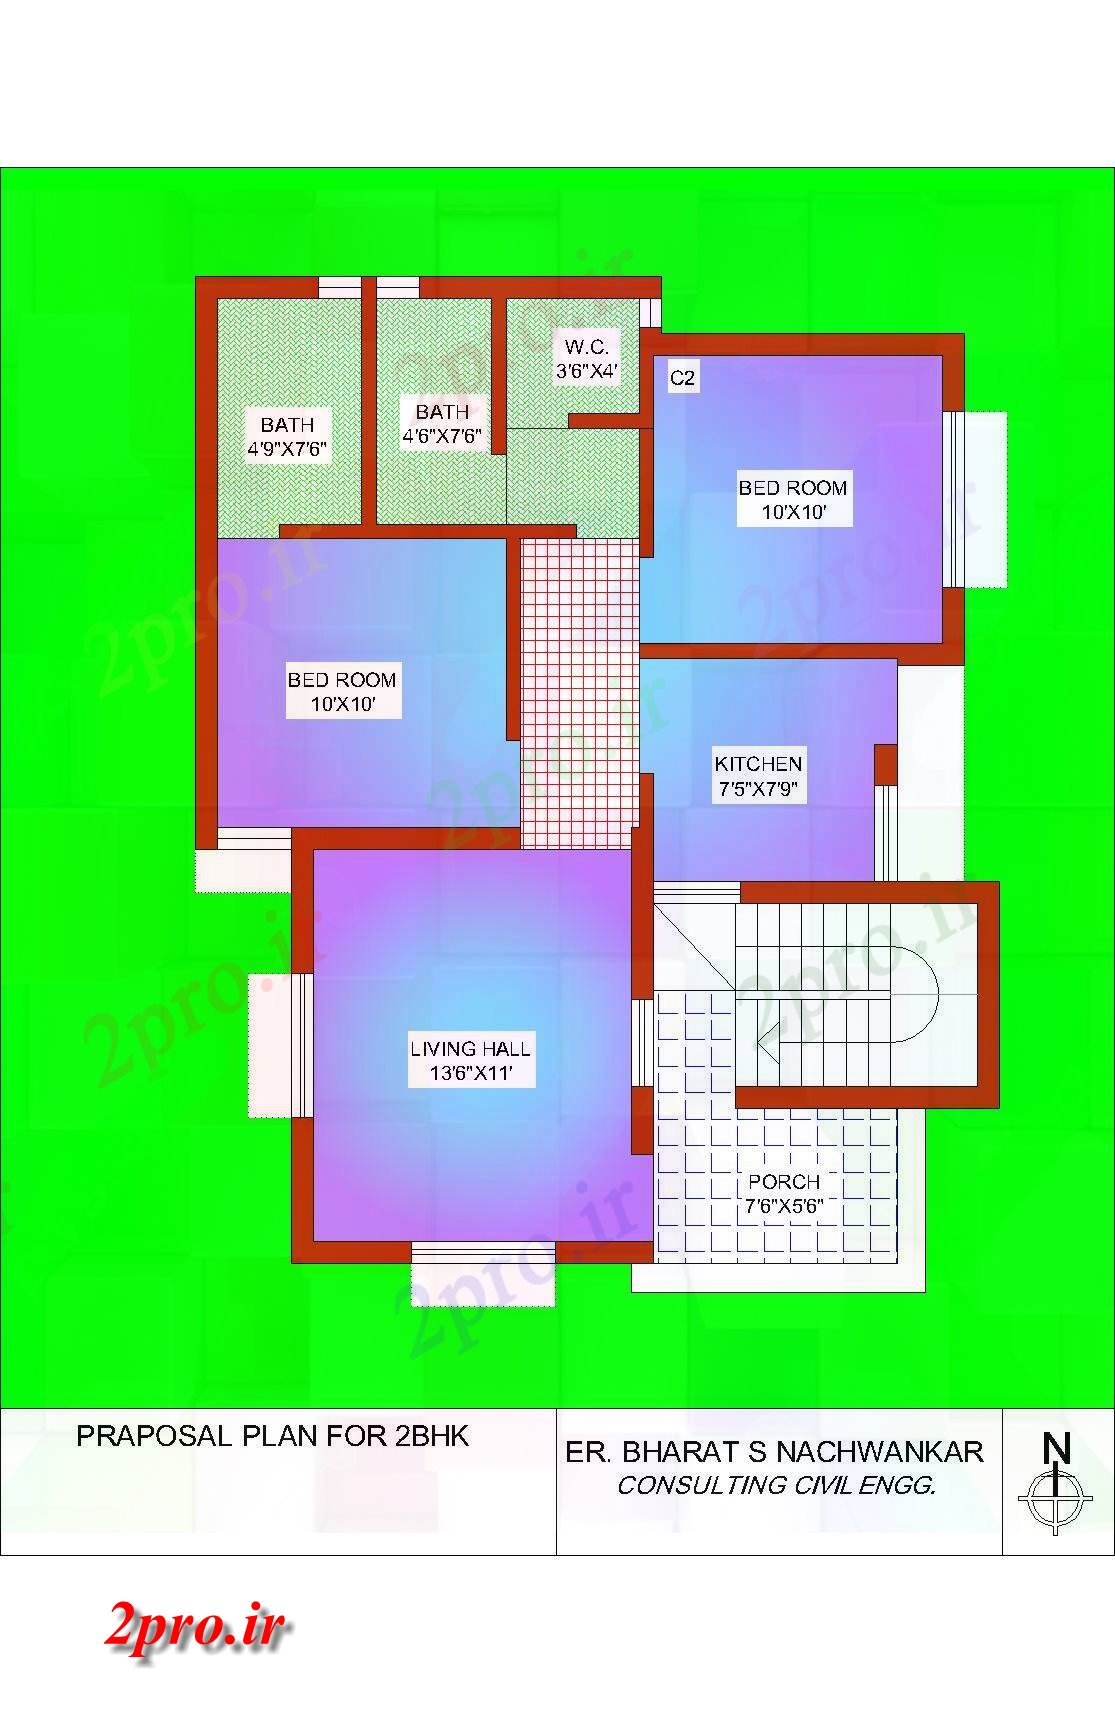 دانلود نقشه آپارتمان یک طبقه طرحی 2BHK ساده 8 در 10 متر (کد86238)